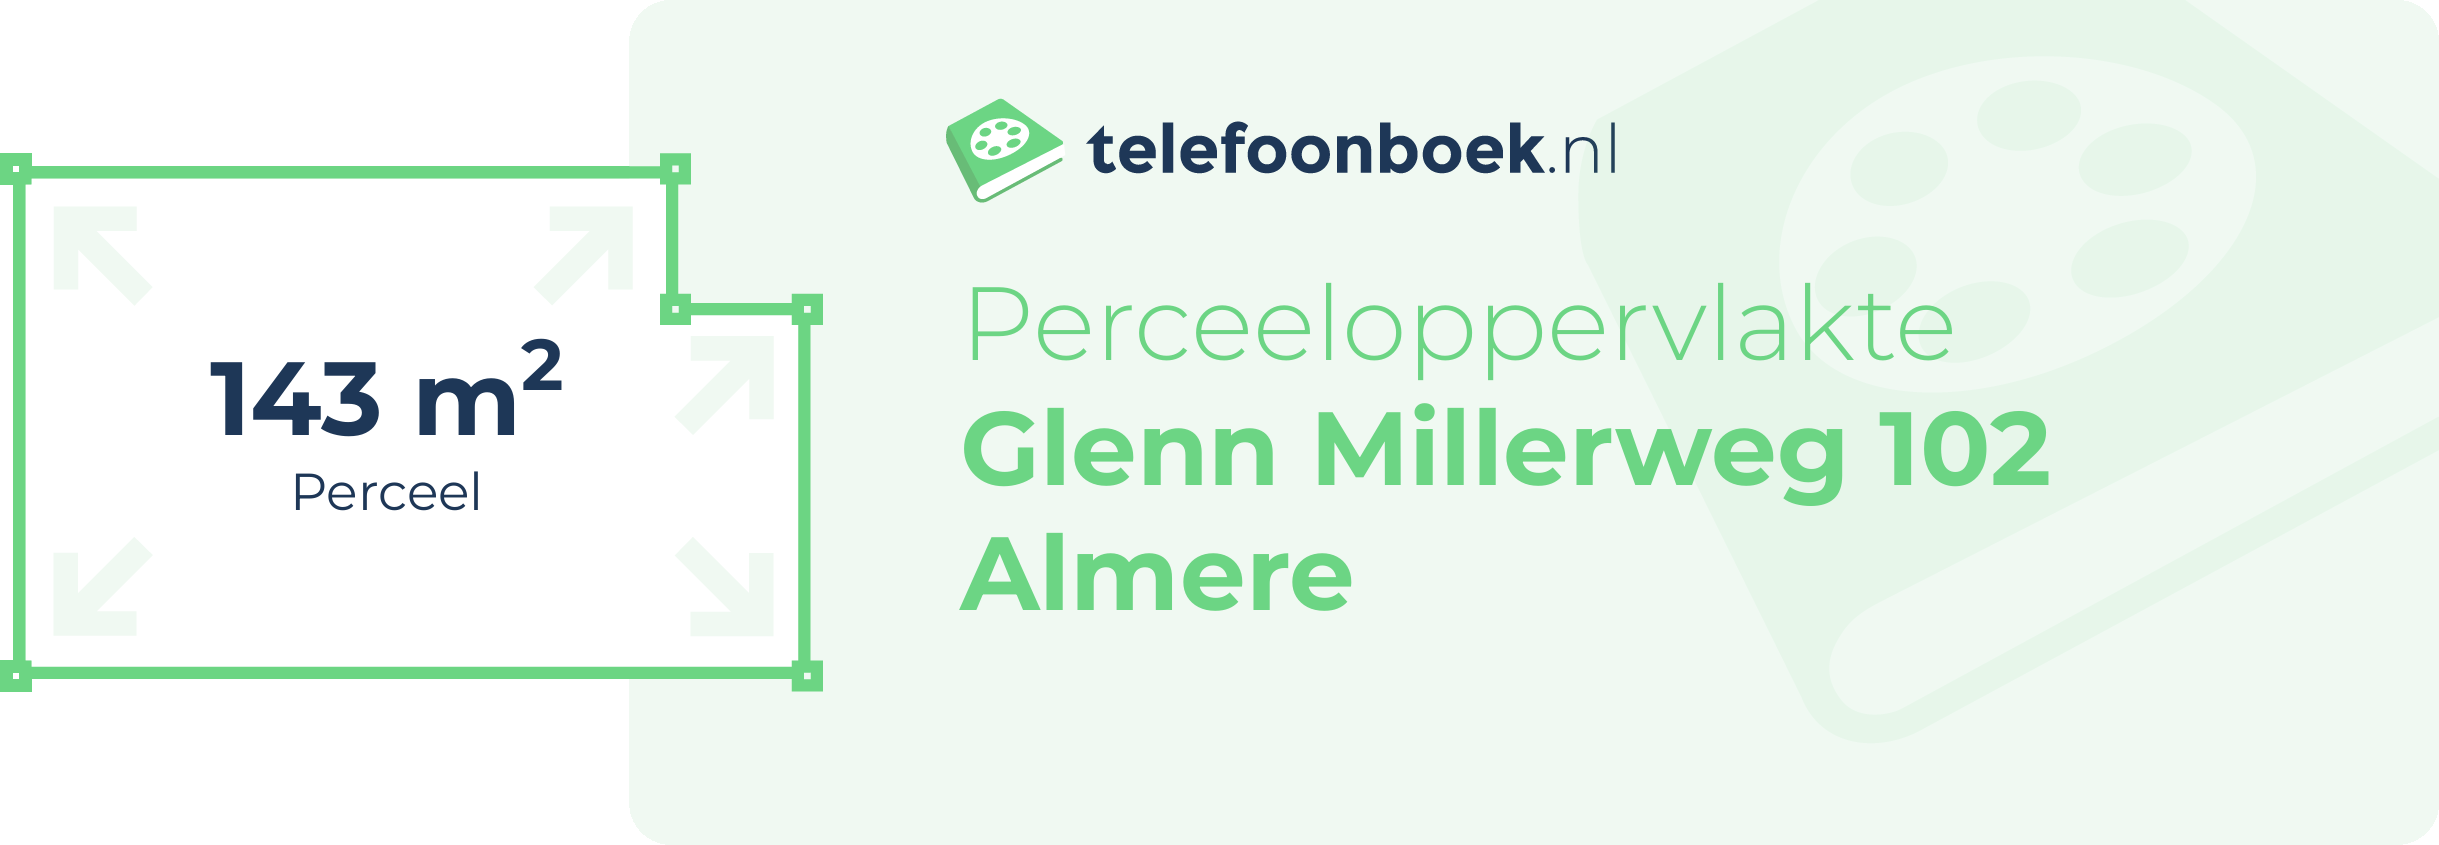 Perceeloppervlakte Glenn Millerweg 102 Almere